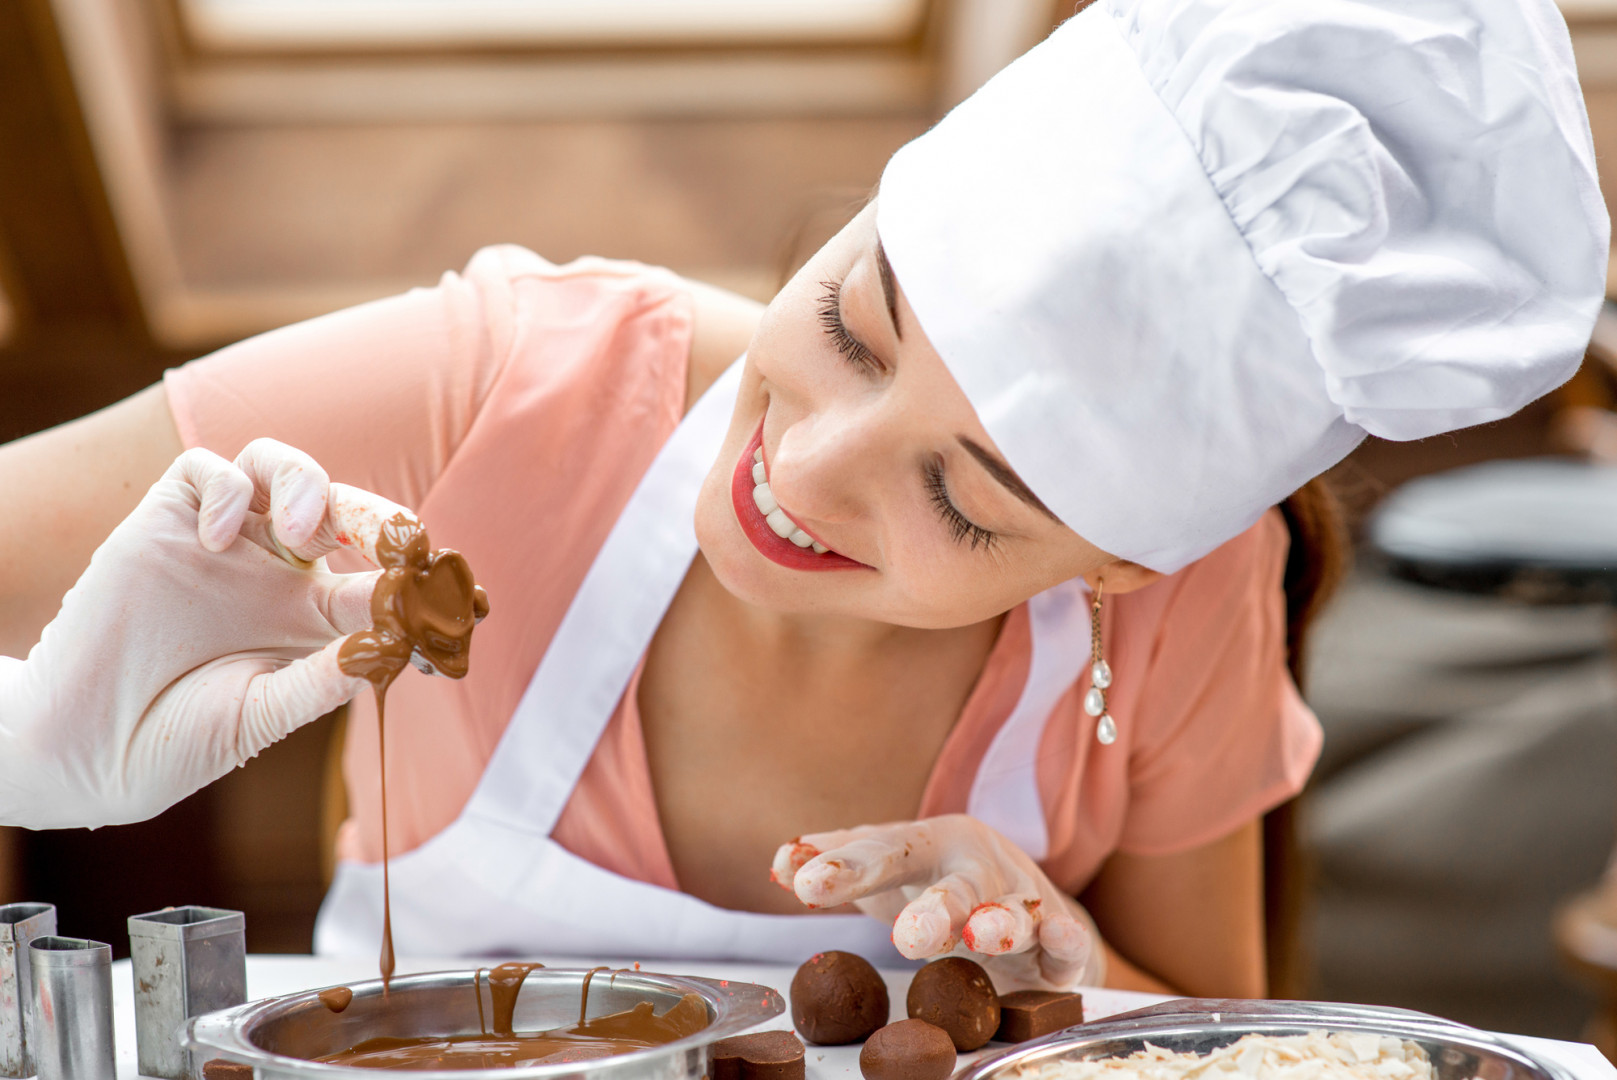 Comment Devenir Un Fabricant De Chocolat Professionnel